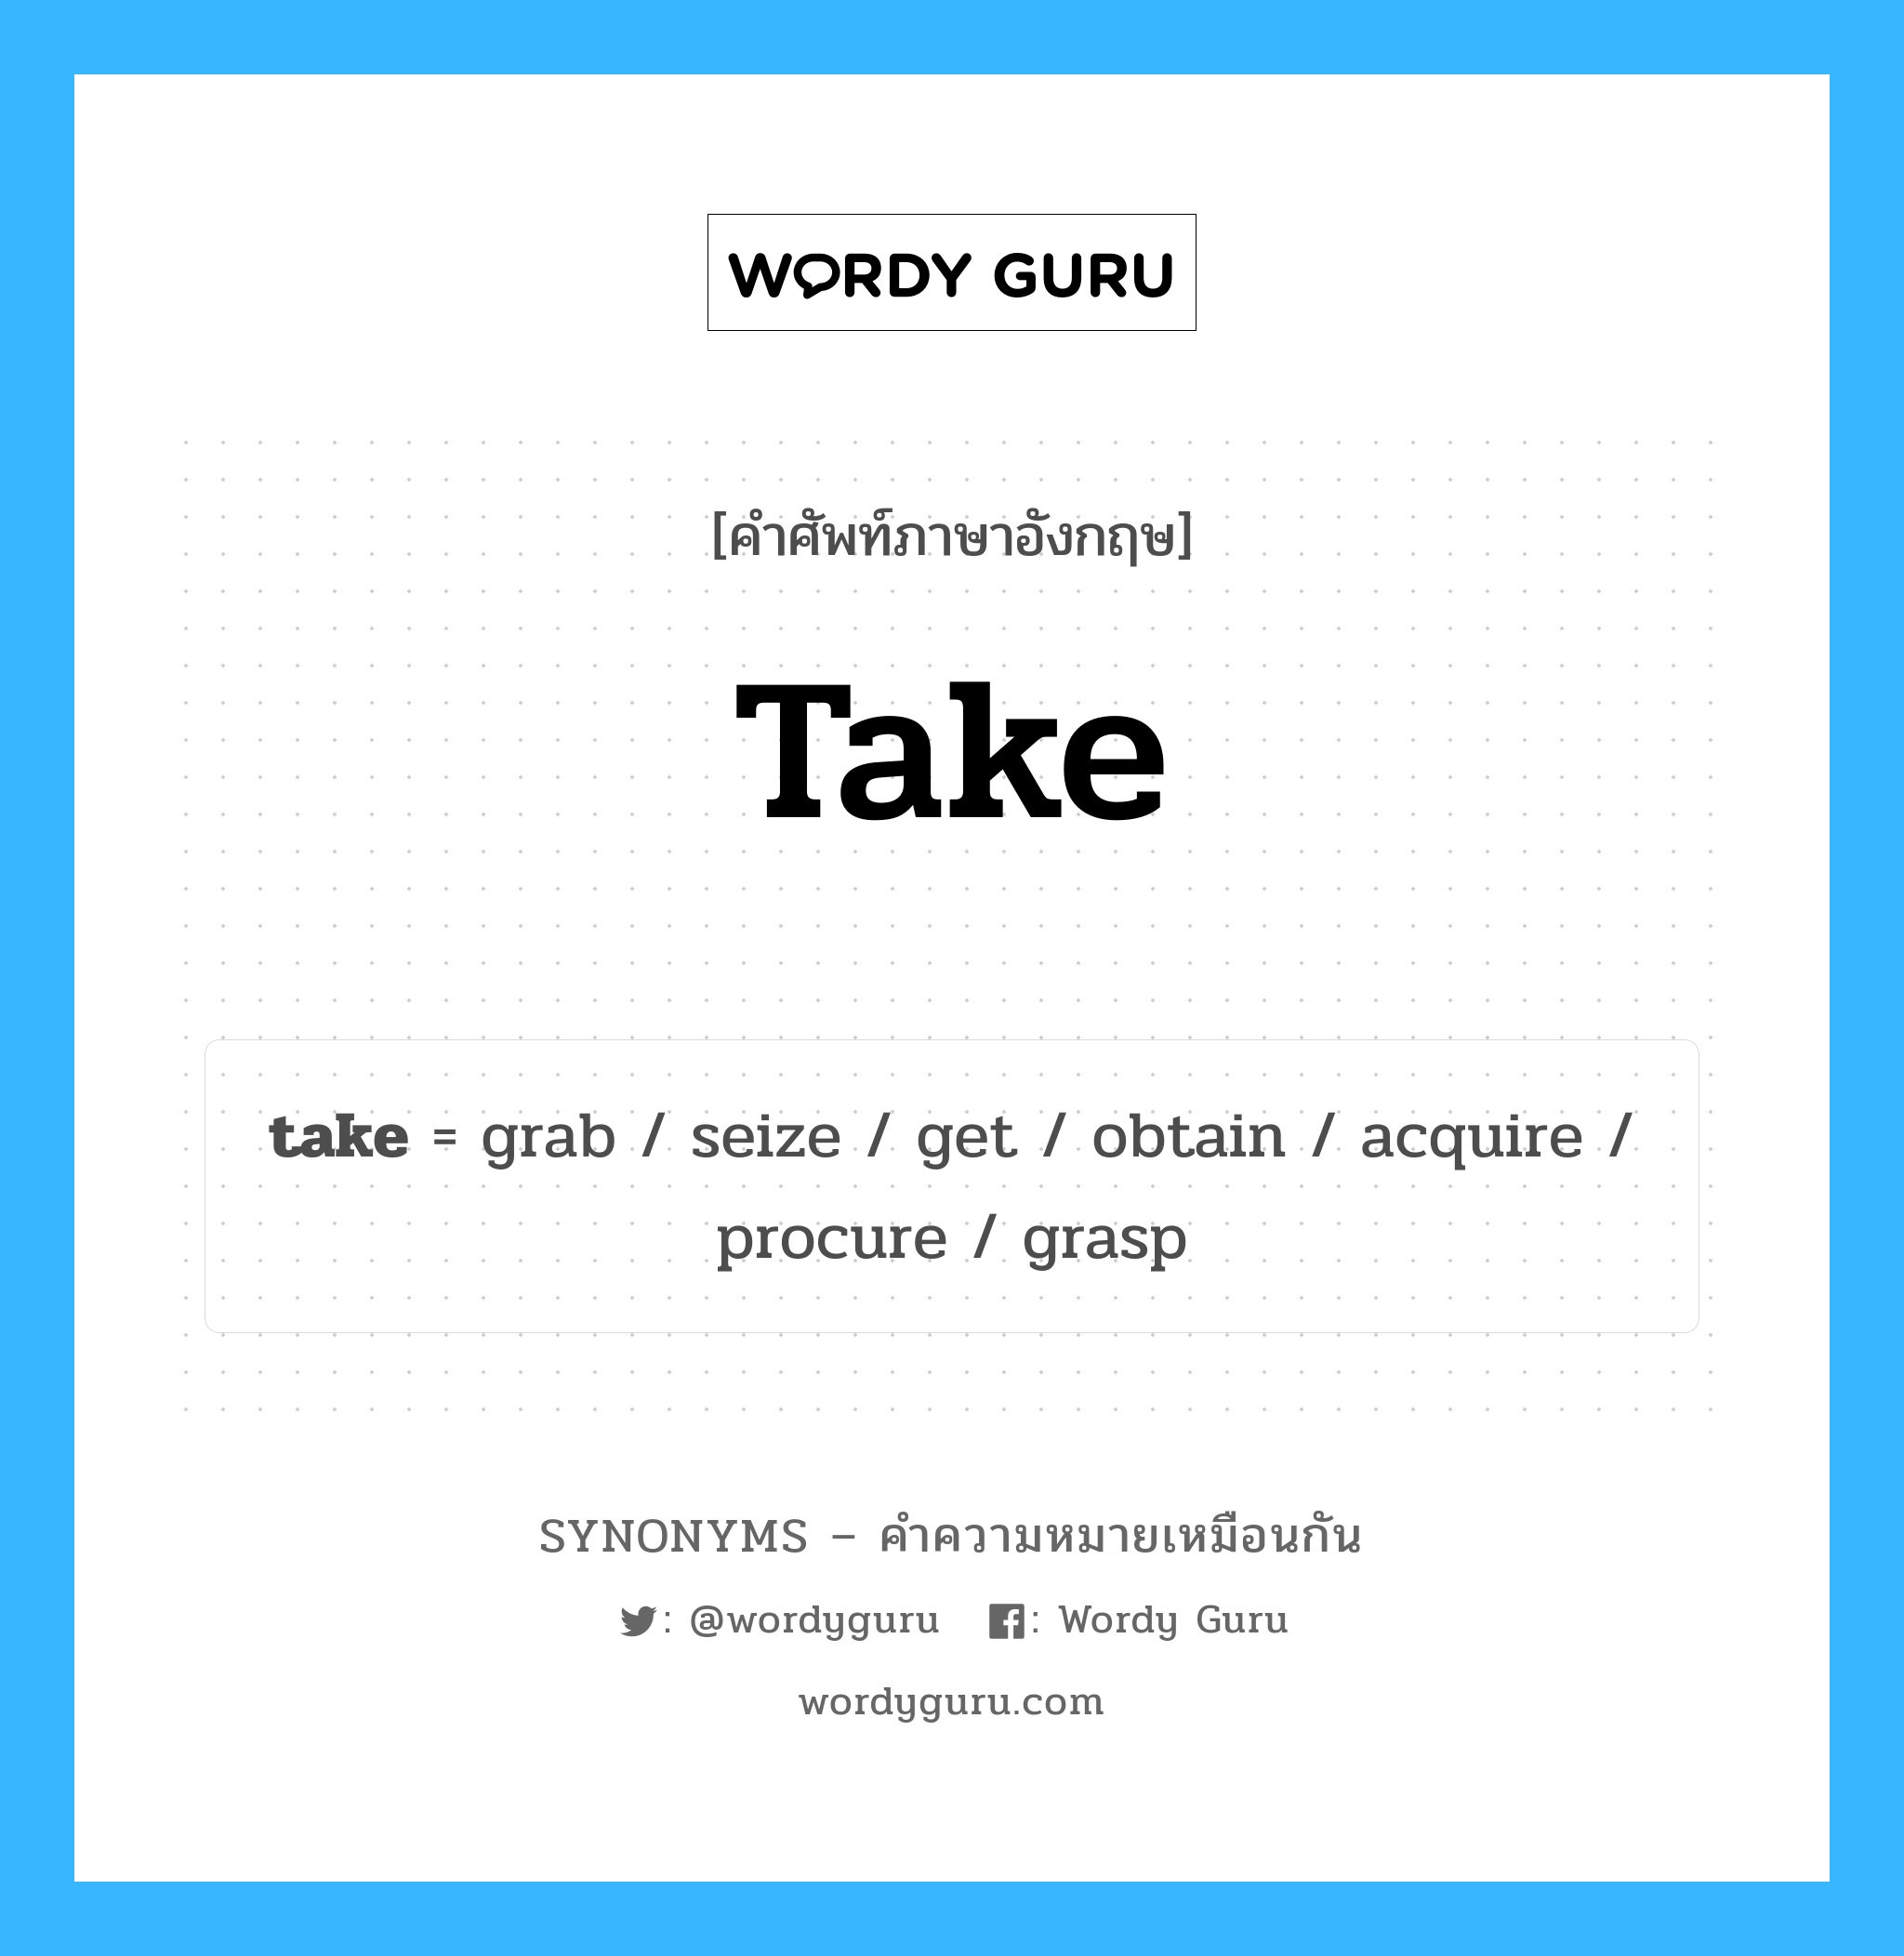 grab เป็นหนึ่งใน take และมีคำอื่น ๆ อีกดังนี้, คำศัพท์ภาษาอังกฤษ grab ความหมายคล้ายกันกับ take แปลว่า คว้า หมวด take